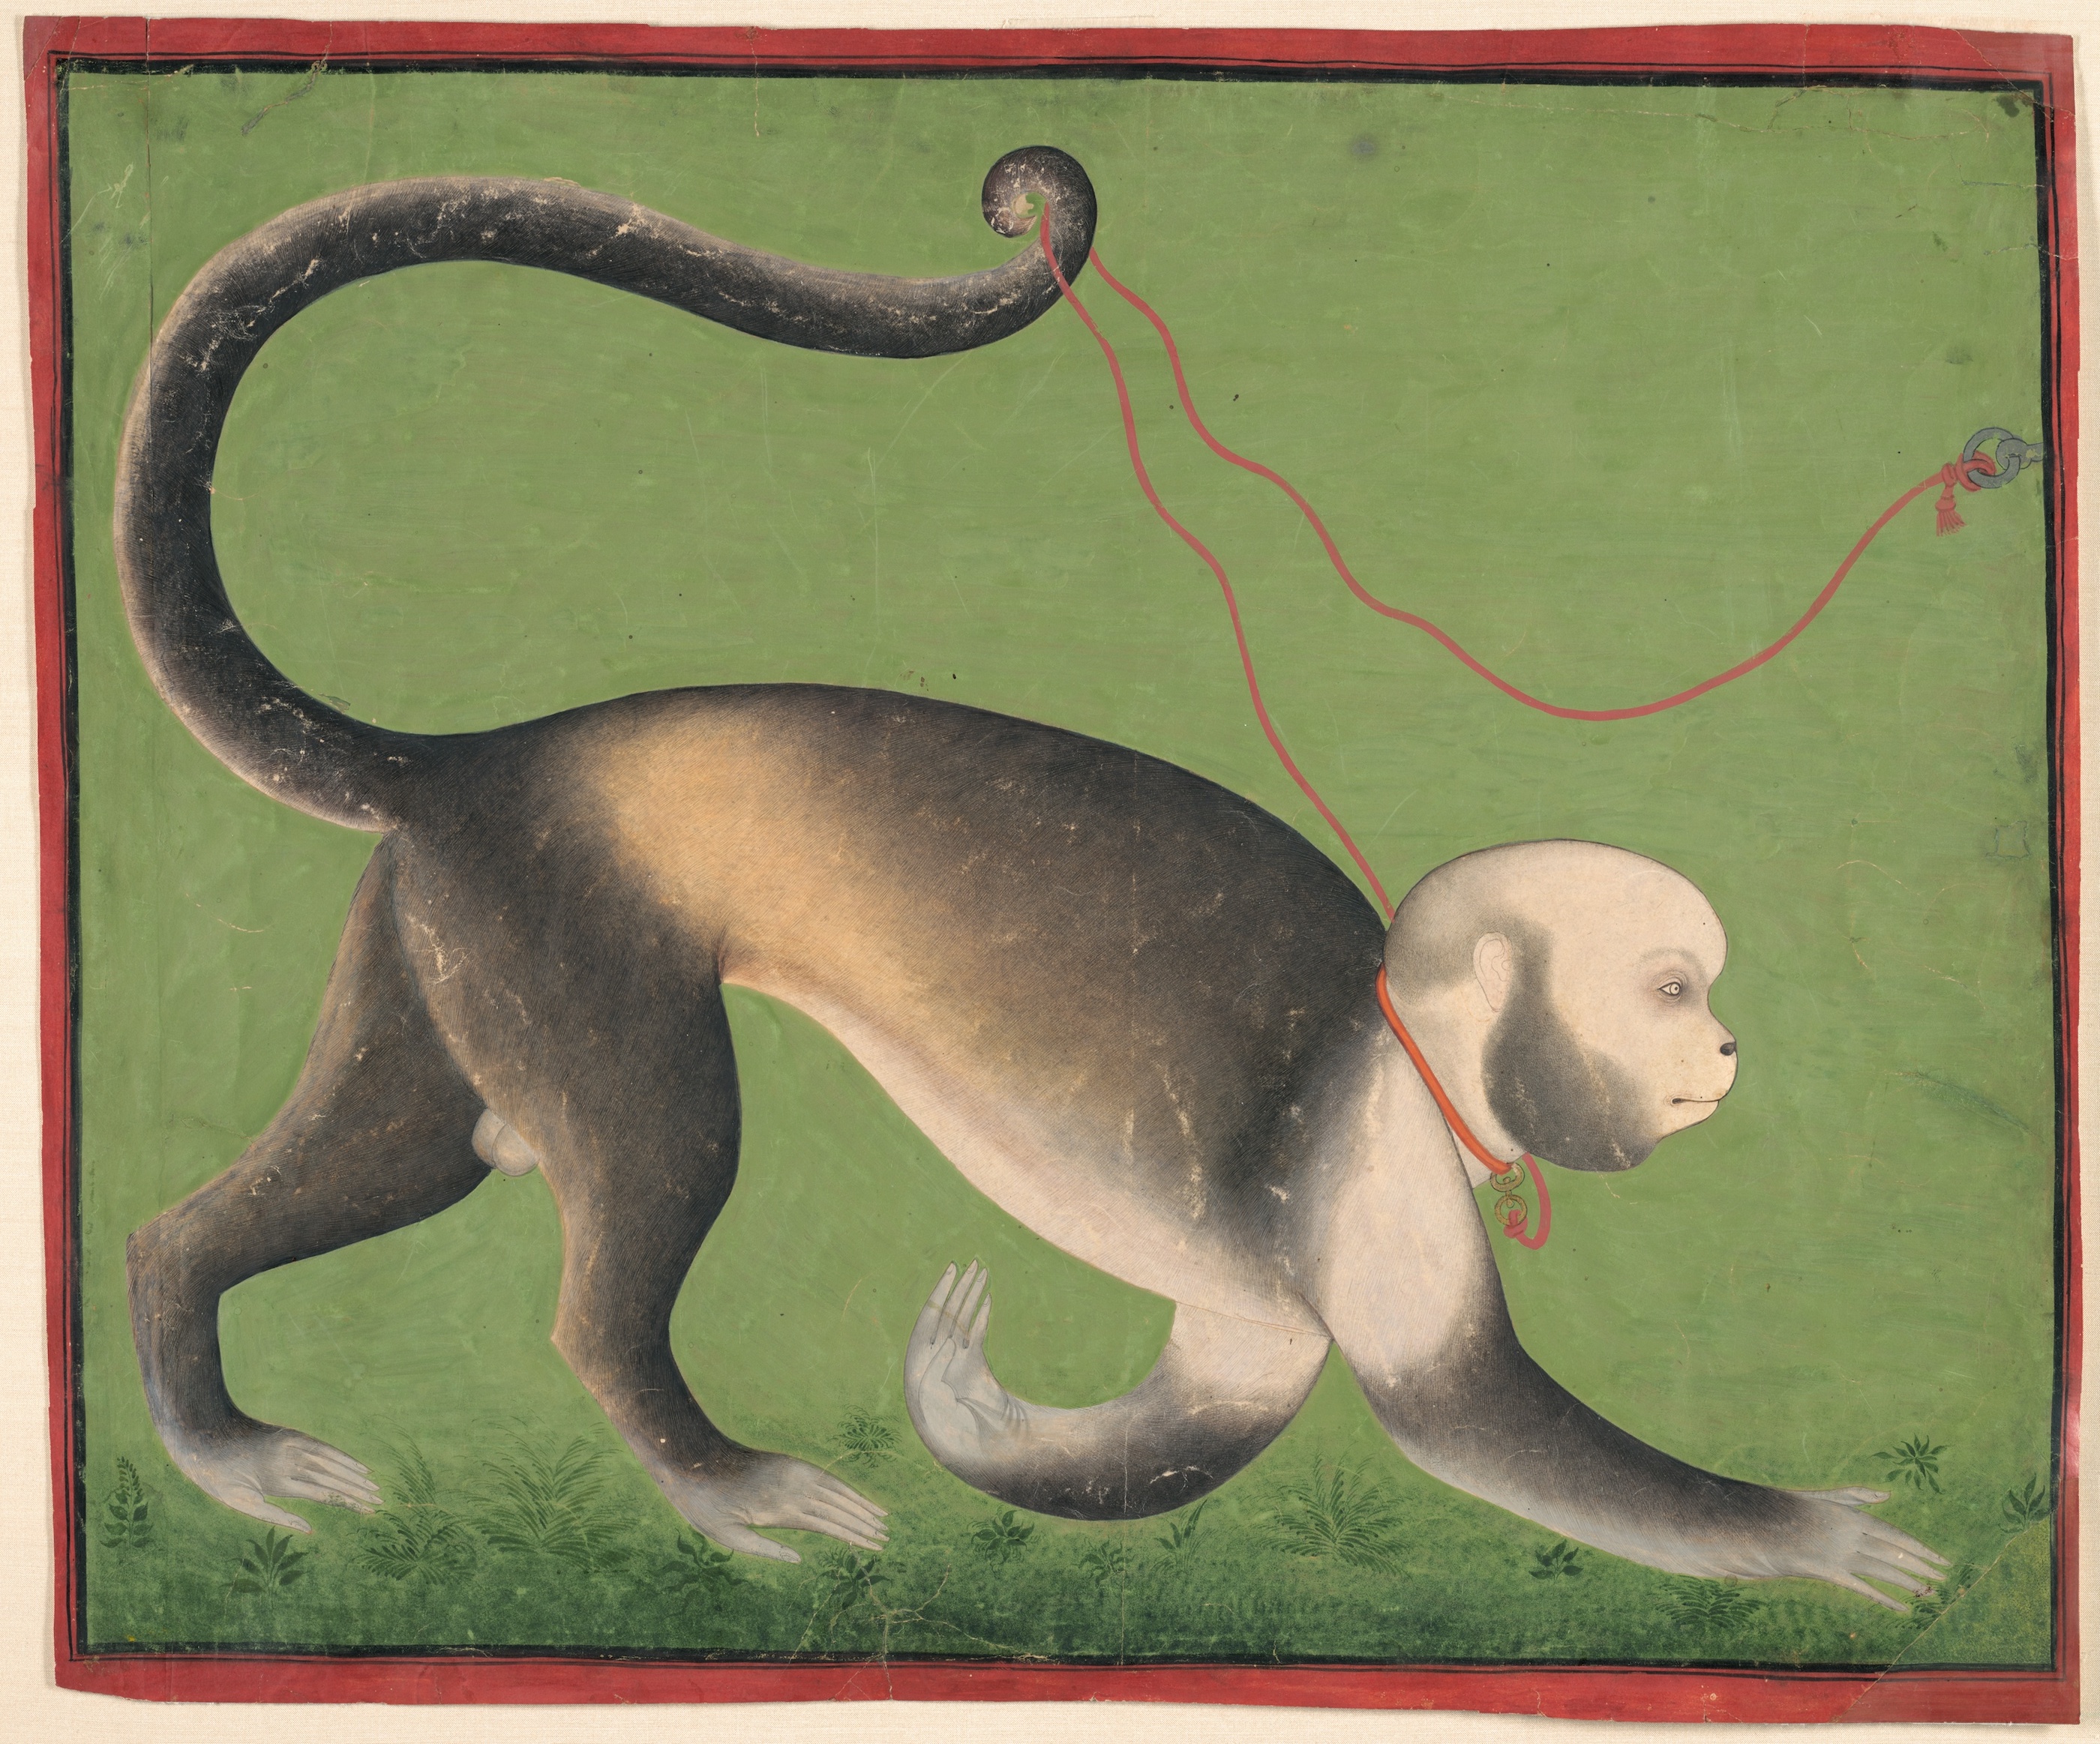 猴子的紀念肖像 by  Stipple Master - 1705 年至 1710 年 - 48.5 × 58.7 釐米 